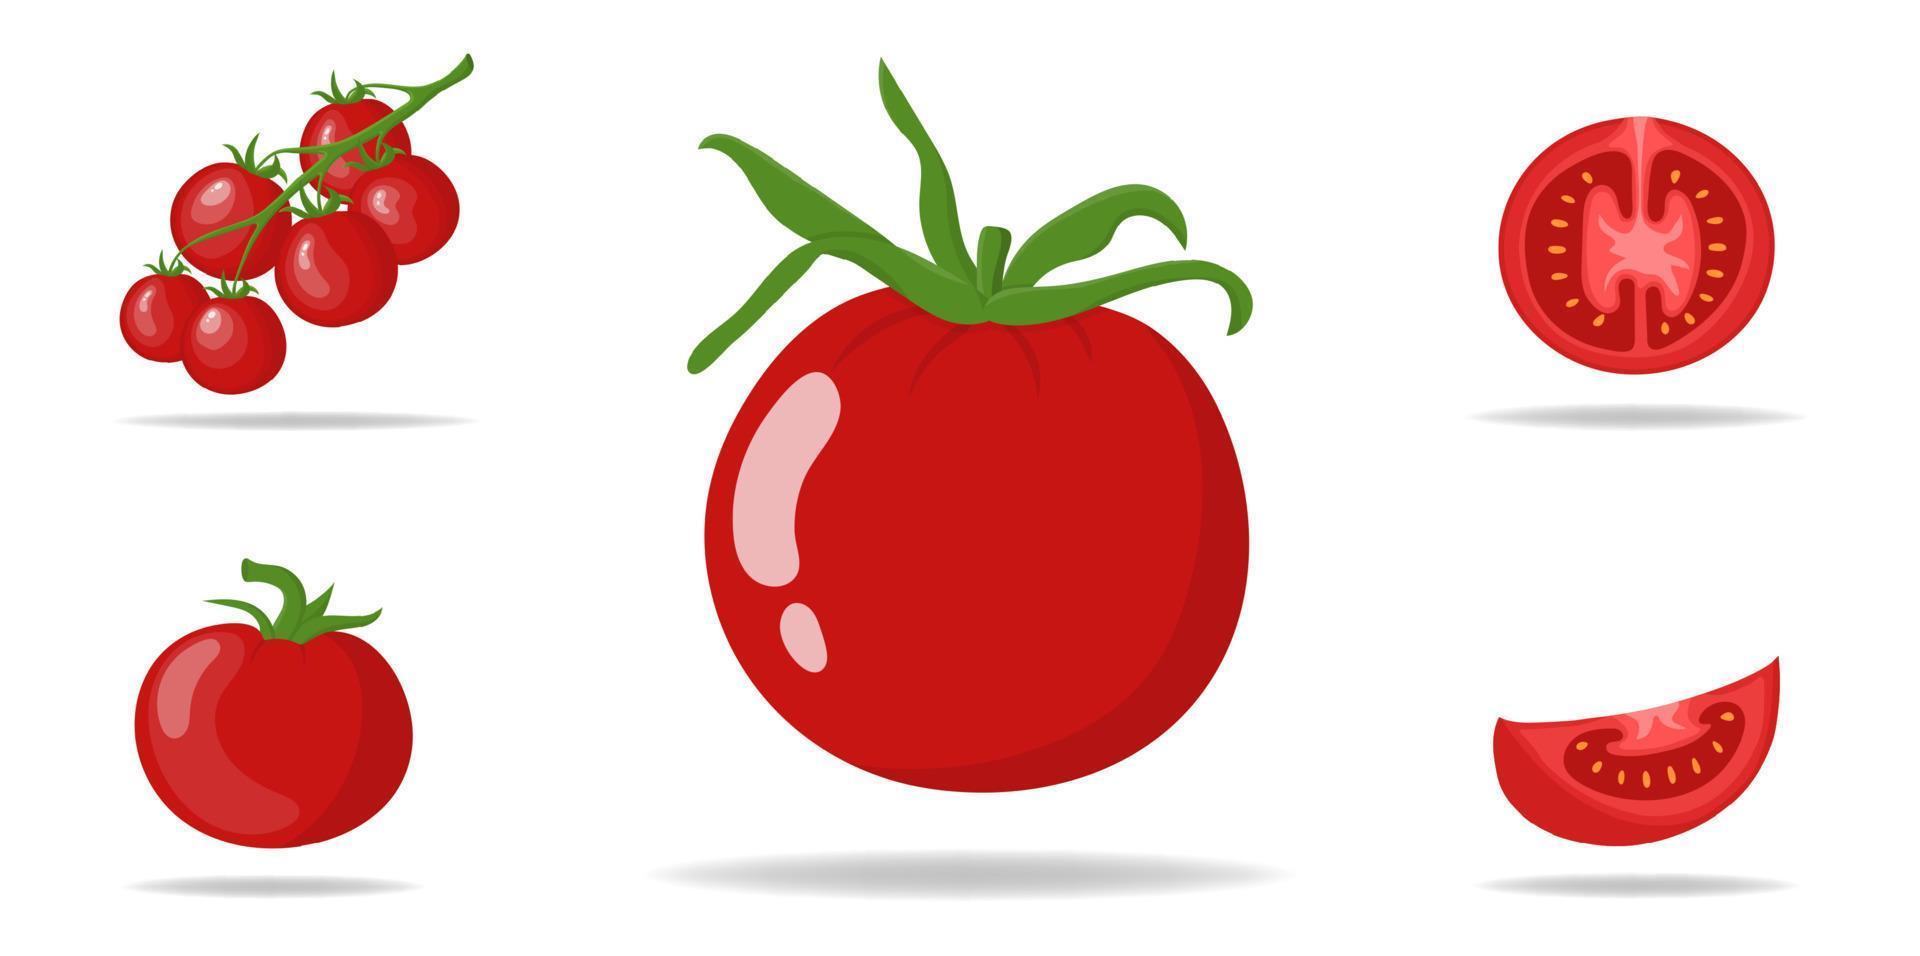 set van verse rode tomaten geïsoleerd op een witte achtergrond. tak, hele, halve en plak tomatenpictogrammen voor markt, receptontwerp. biologisch voedsel. cartoon-stijl. vectorillustratie voor ontwerp, web. vector